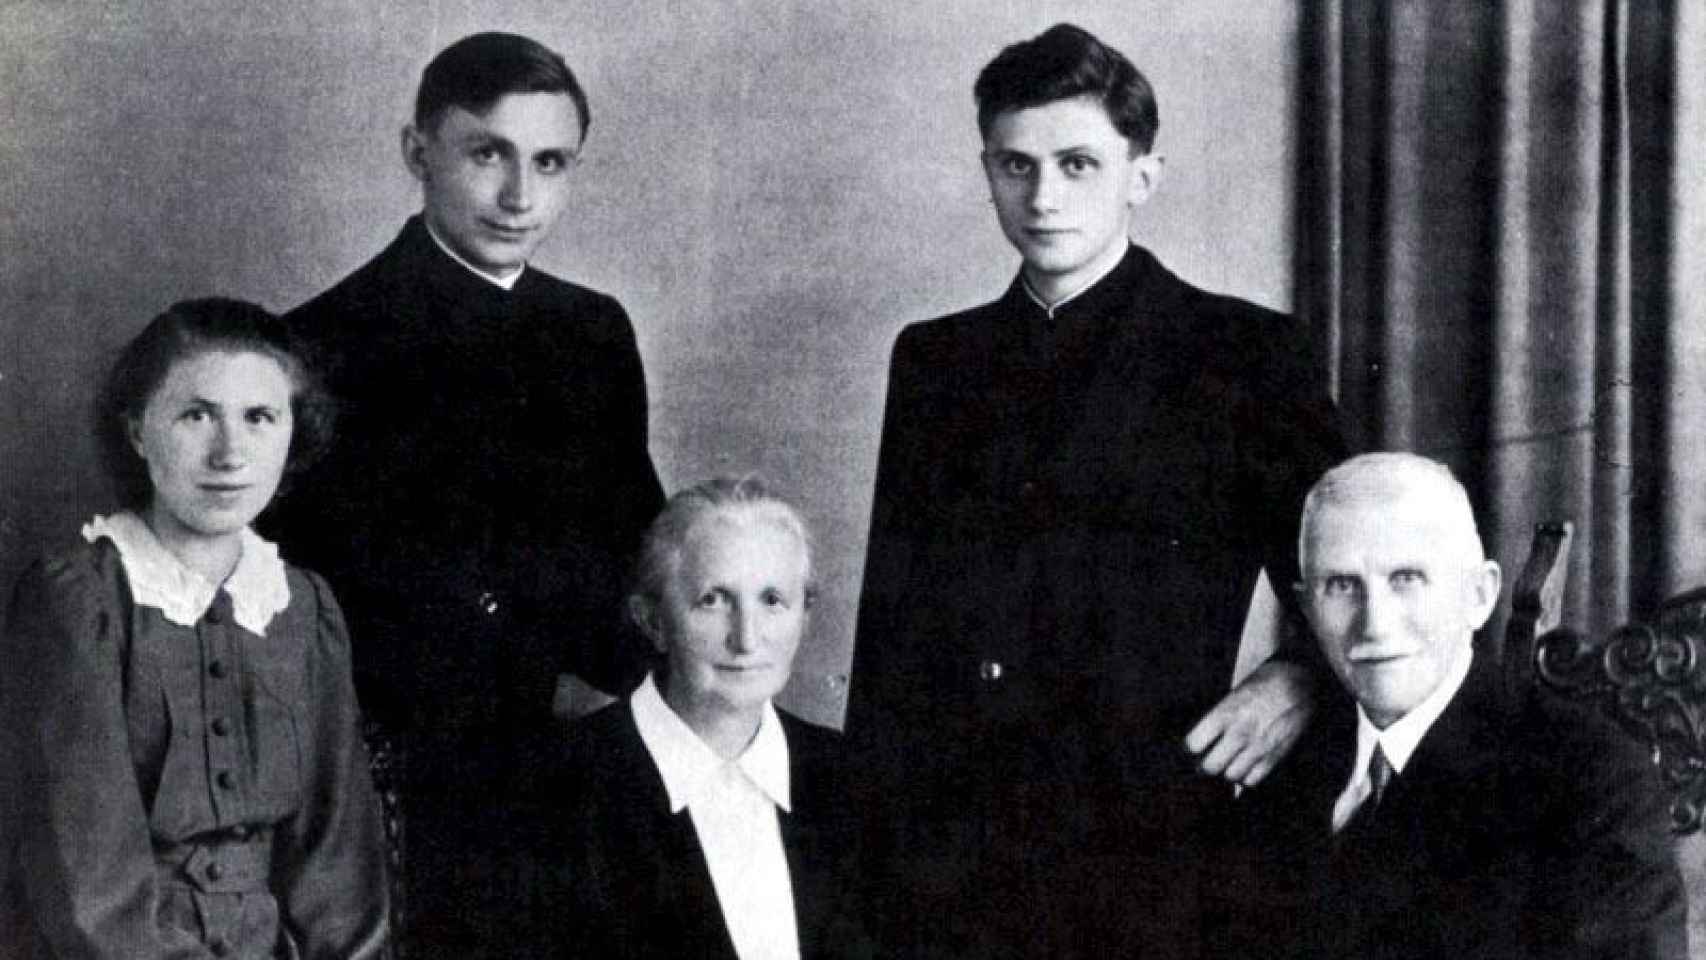 Foto sin fechar de la famlia Ratzinger: el padre, Joseph, y la madre, María, junto a sus hijos Maria, Georg y Joseph (de izquierda a derecha)